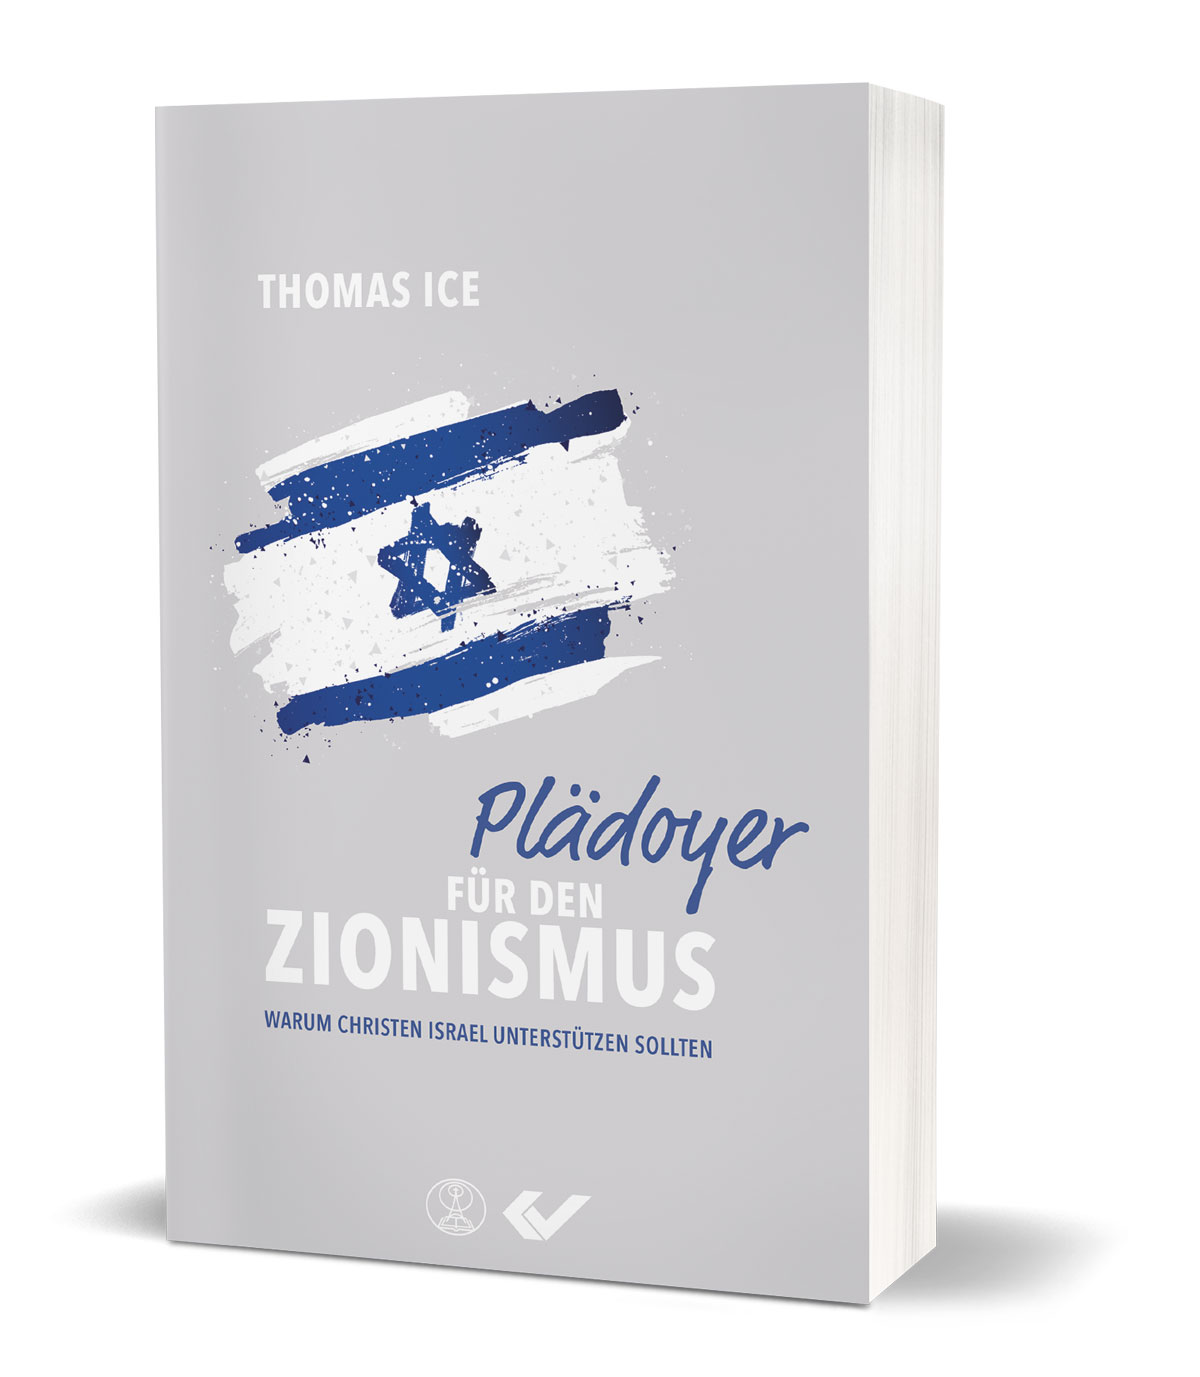 Thomas Ice: Plädoyer für den Zionismus - Warum Christen Israel unterstützen sollten